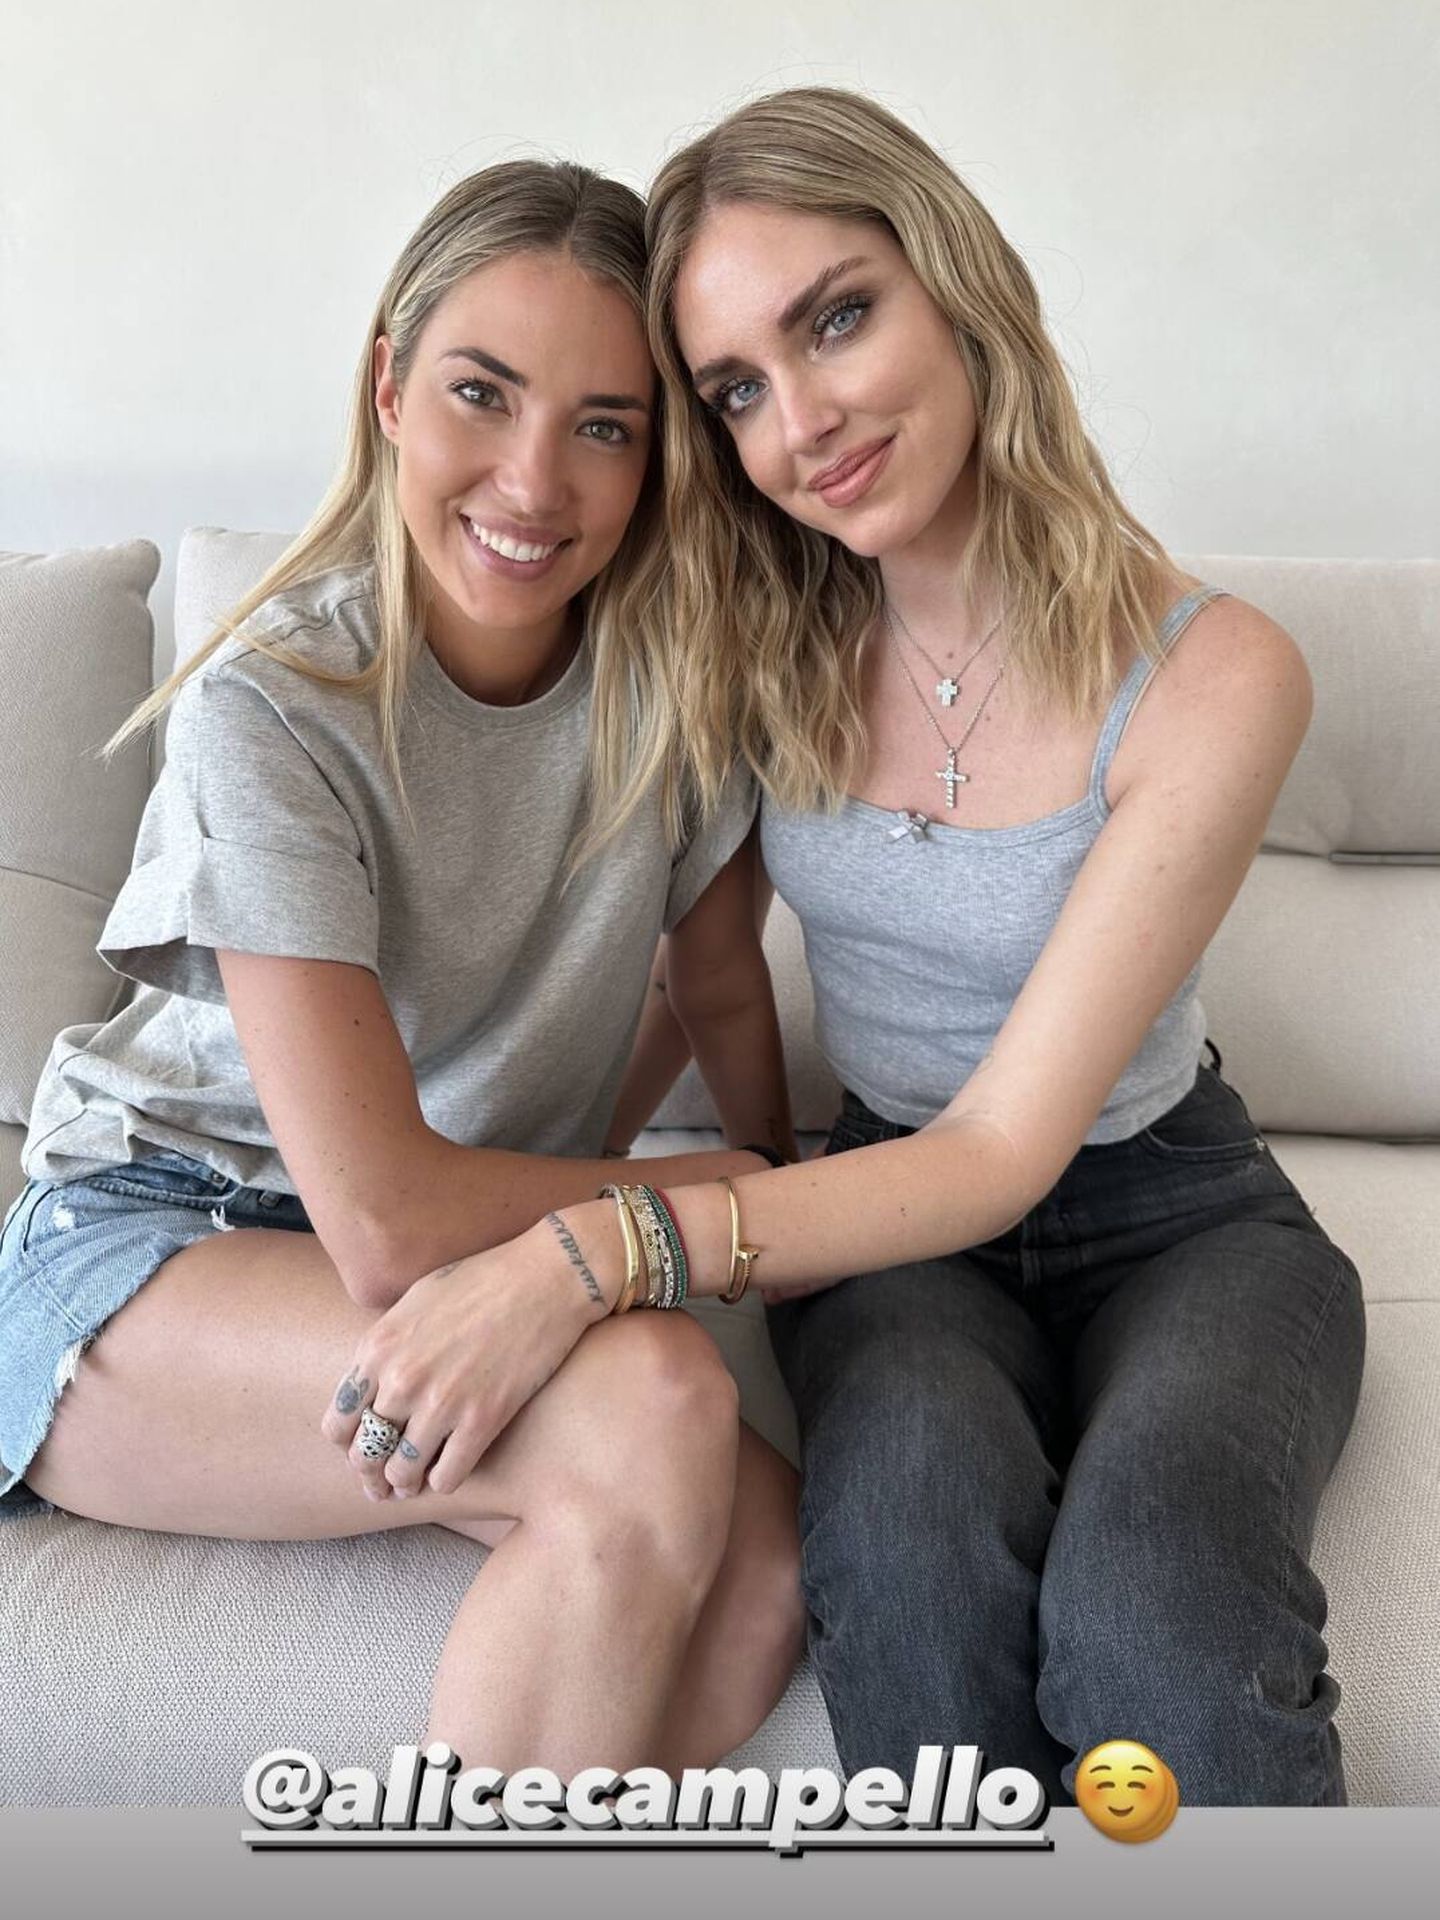 La influencer ha compartido su visita a la casa de su amiga Alice Campello. (Instagram / @chiaraferragni)